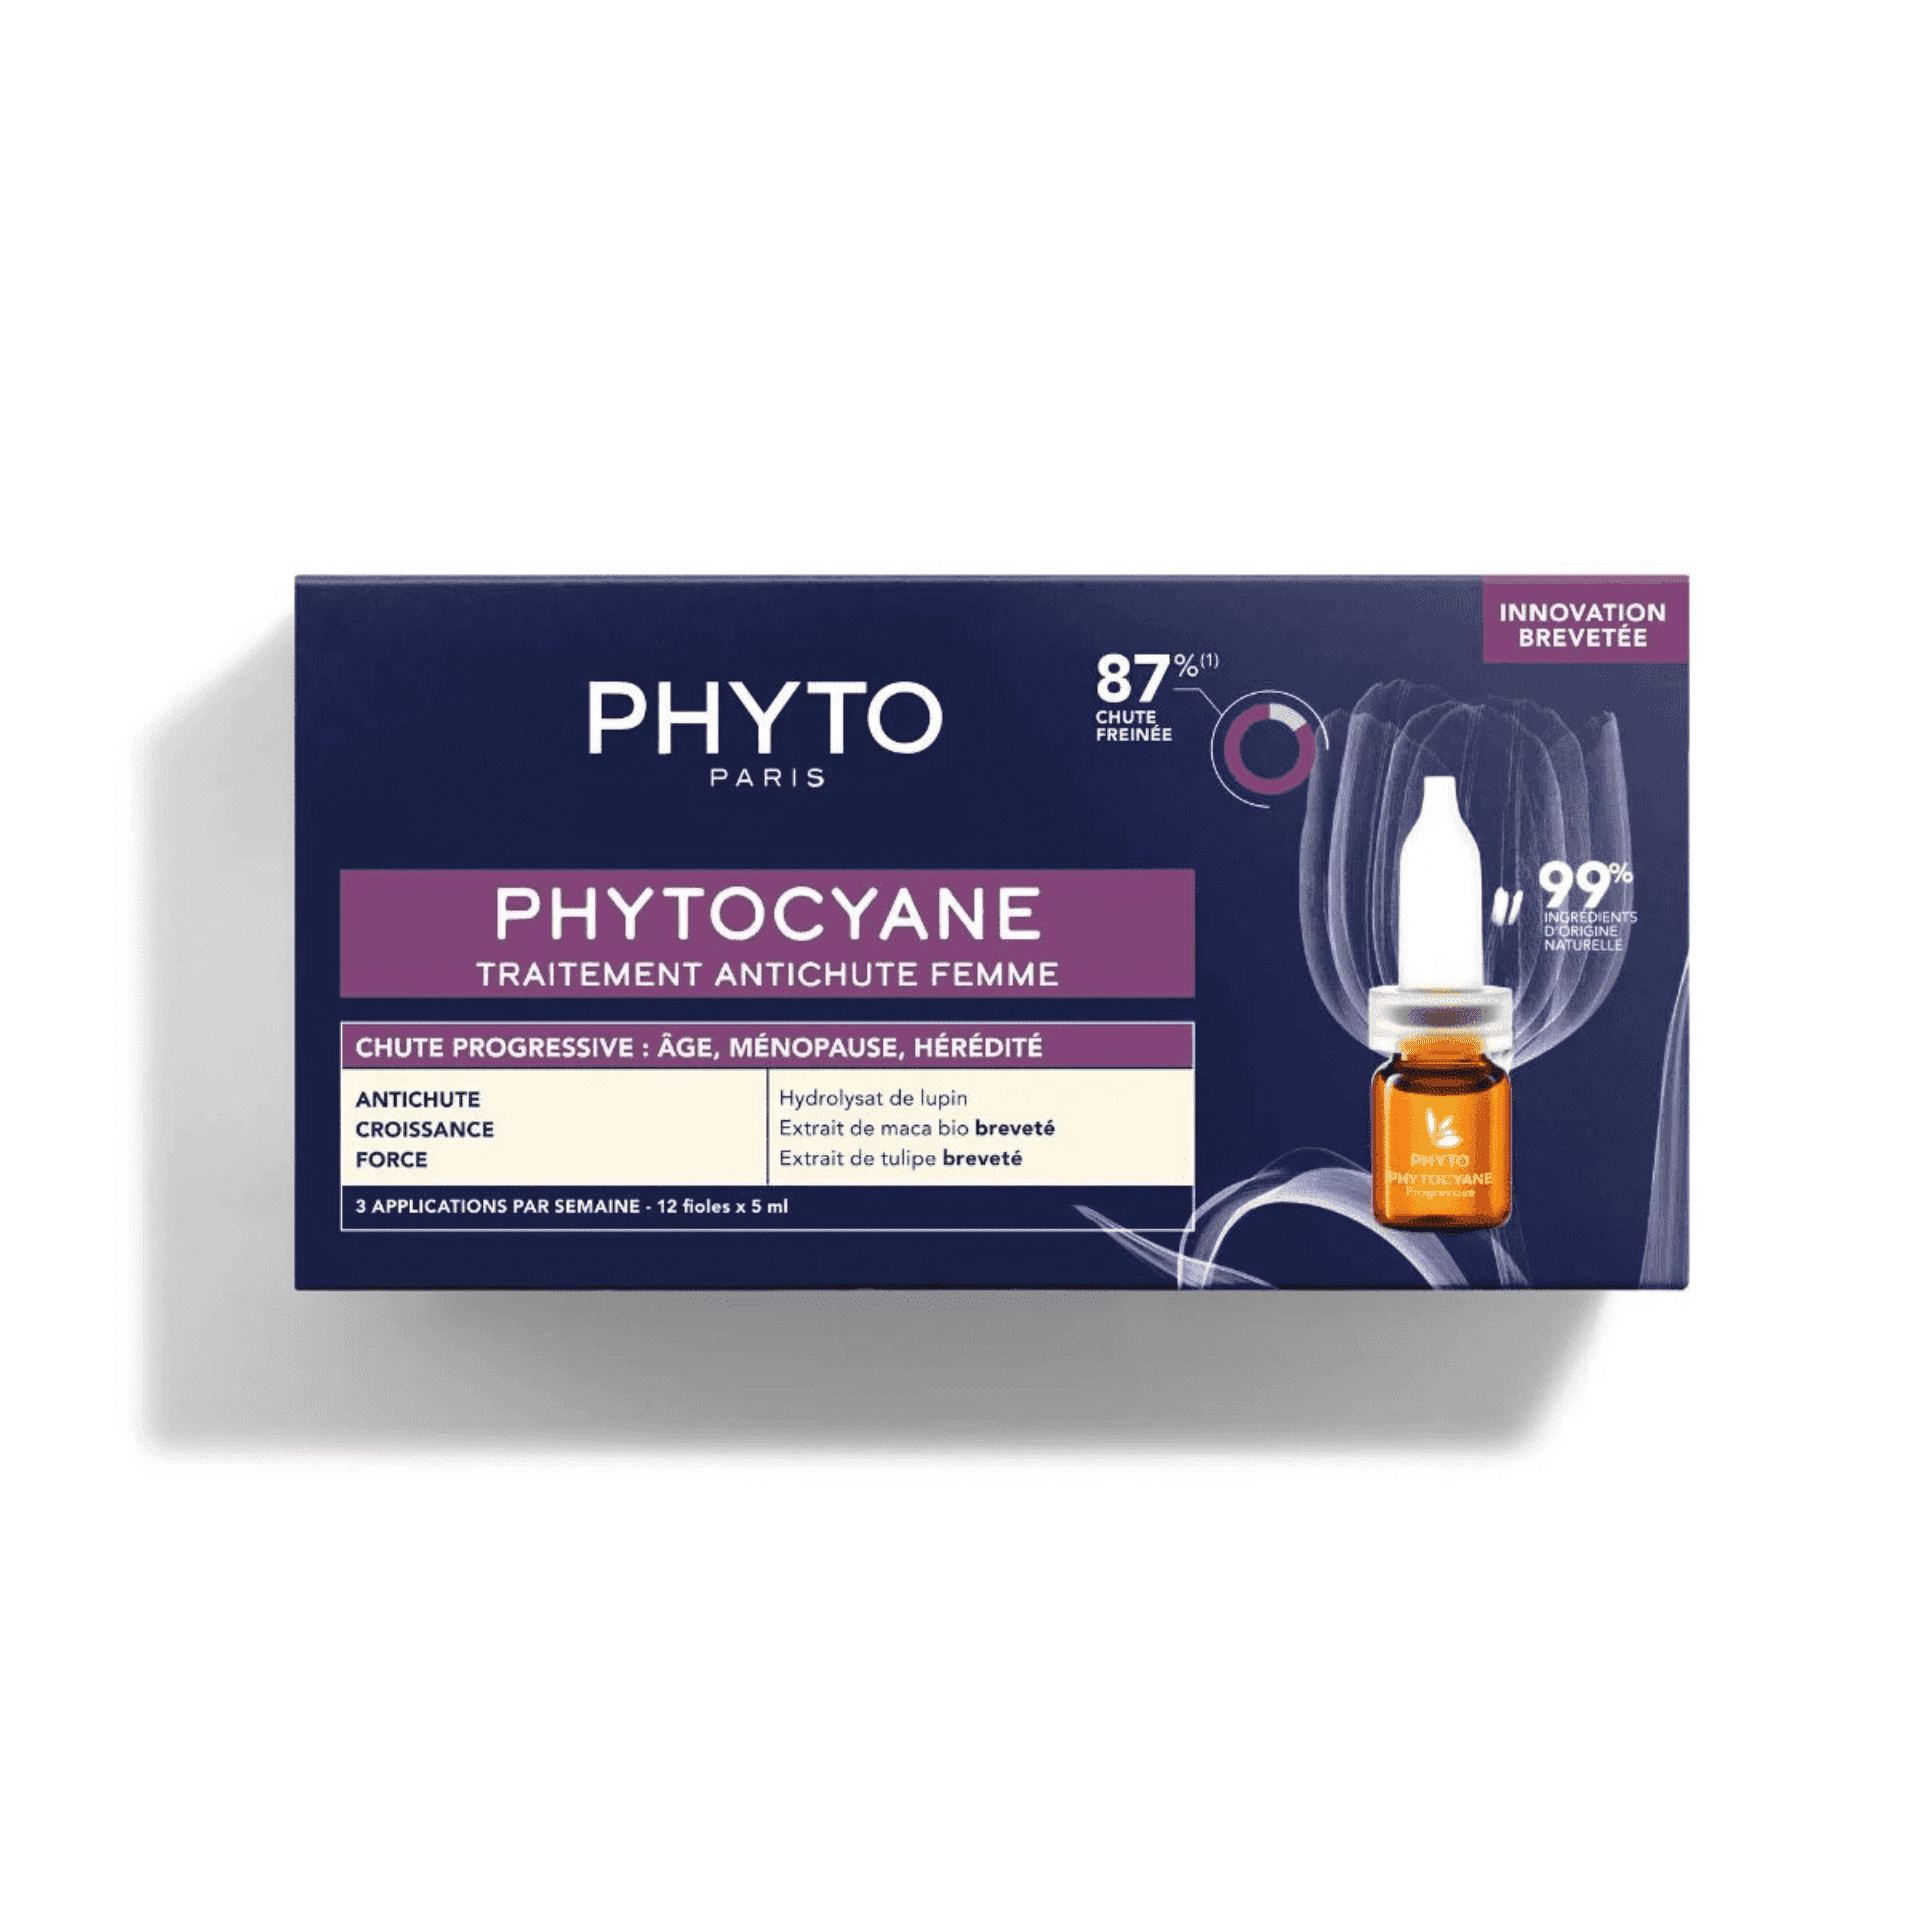 Phytocyane behandeling tegen progressieve haaruitval vrouwen